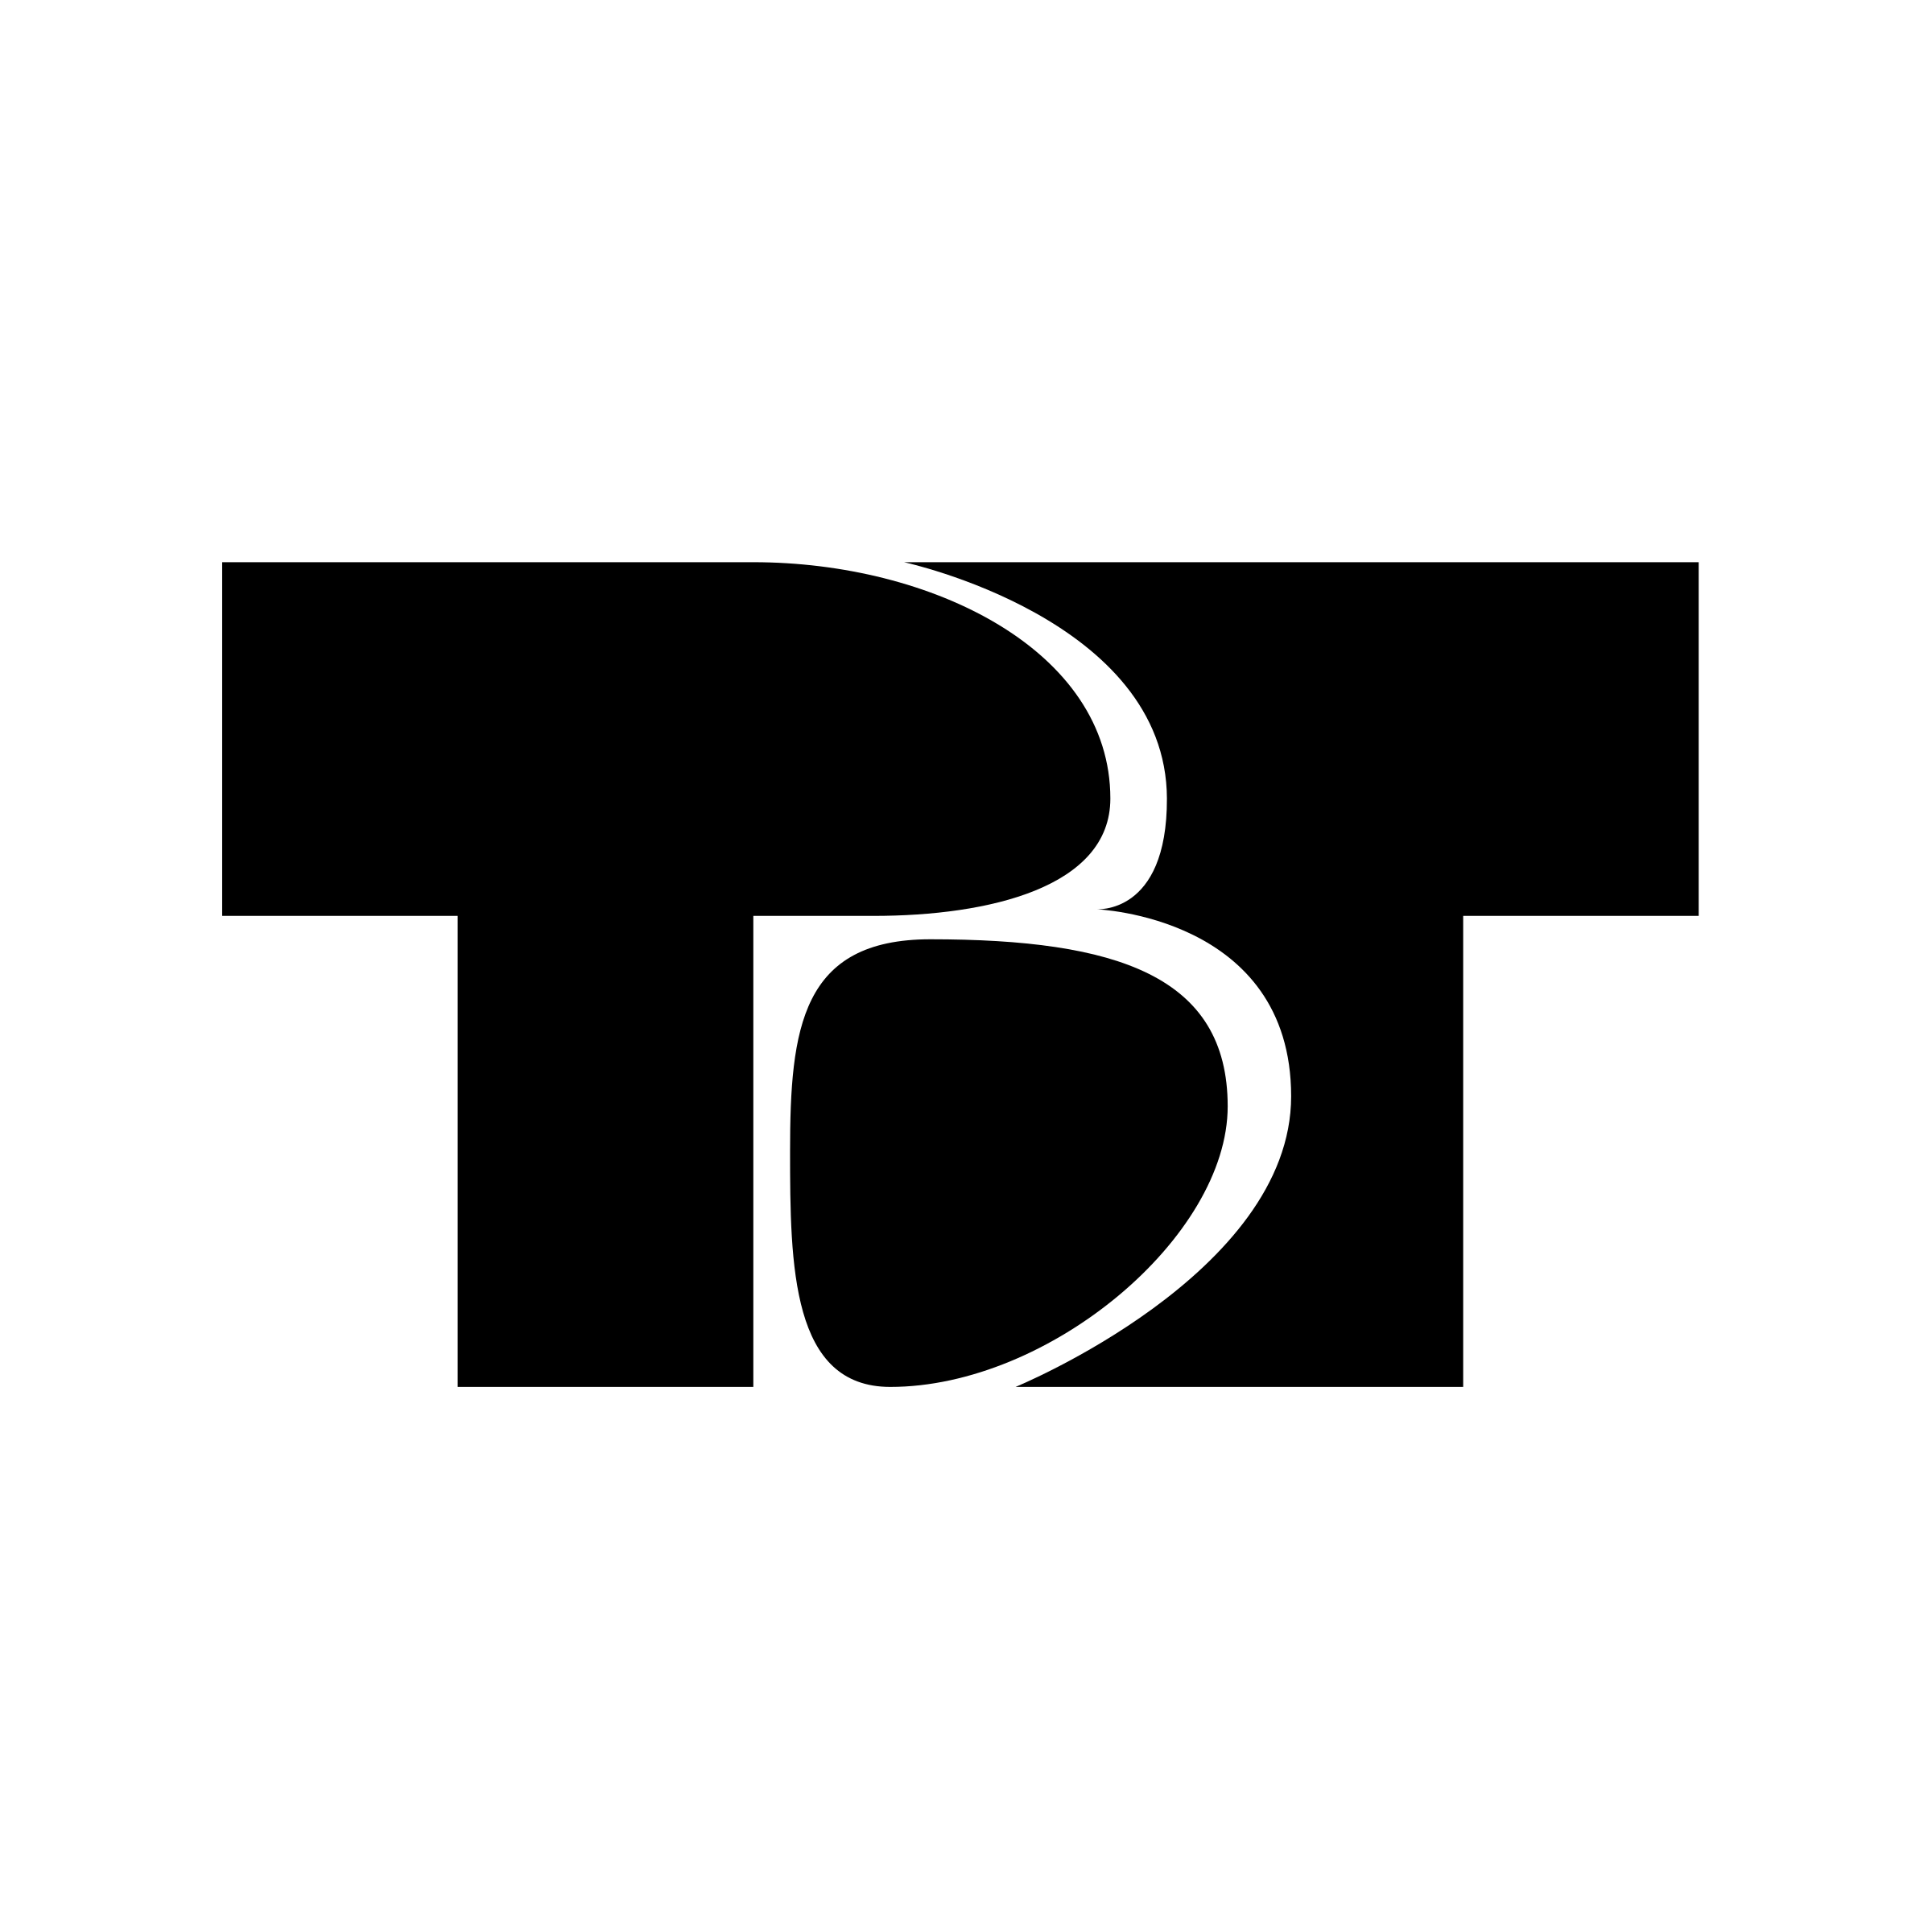 TVT Logo - TVT Logo PNG Transparent & SVG Vector